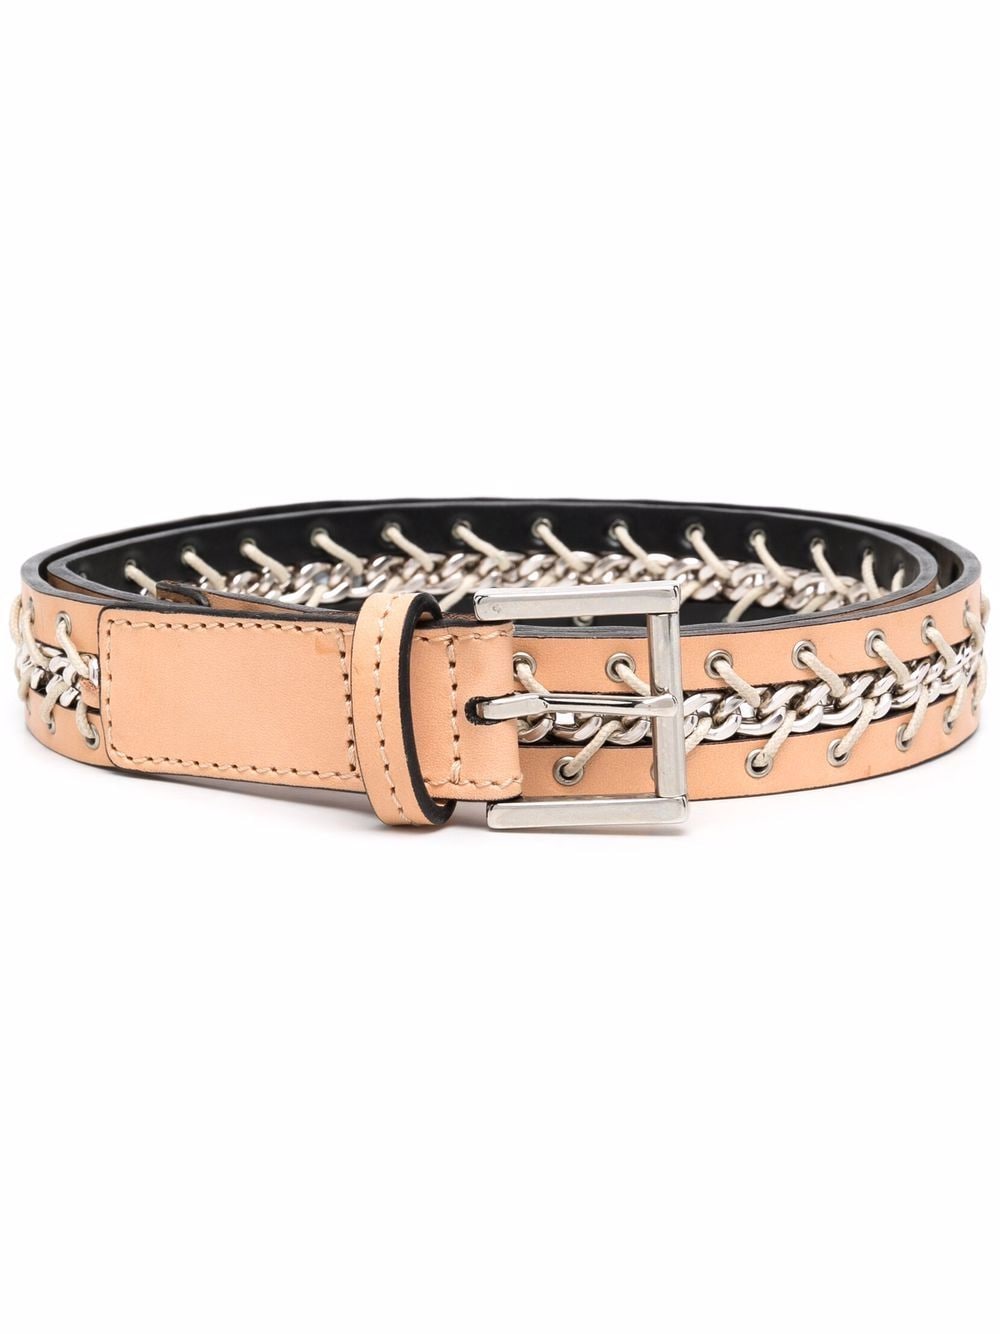 2000s chain-link embellished leather belt